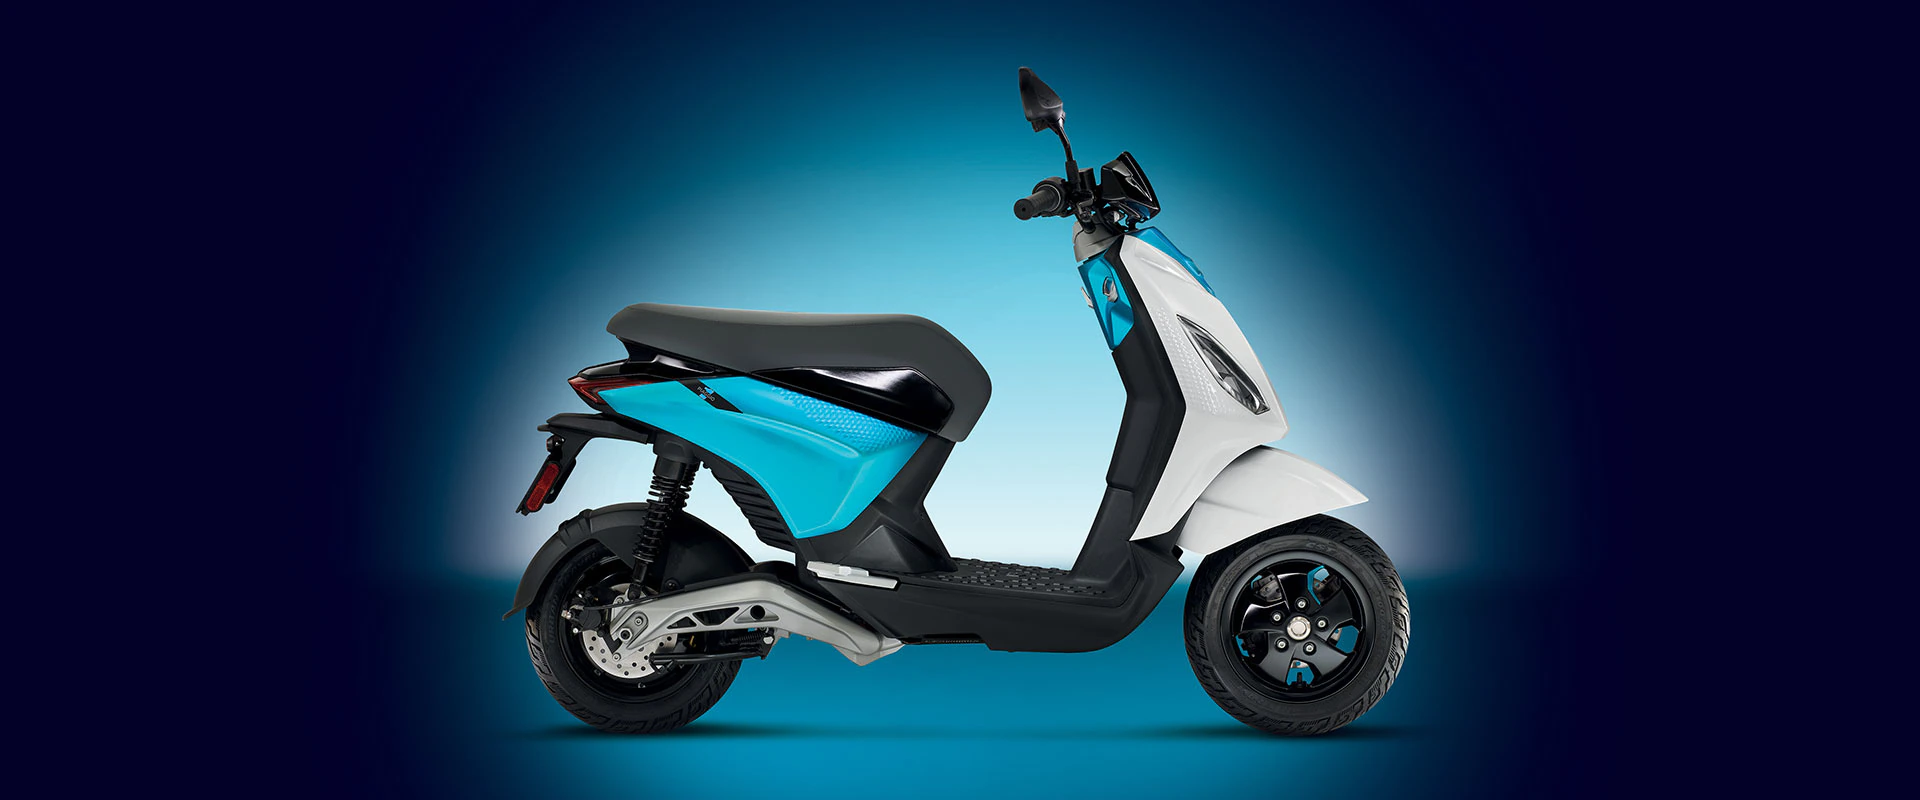 Piaggio Active è lo scooter elettrico medio più venduto nel 2022 - epaddock.it